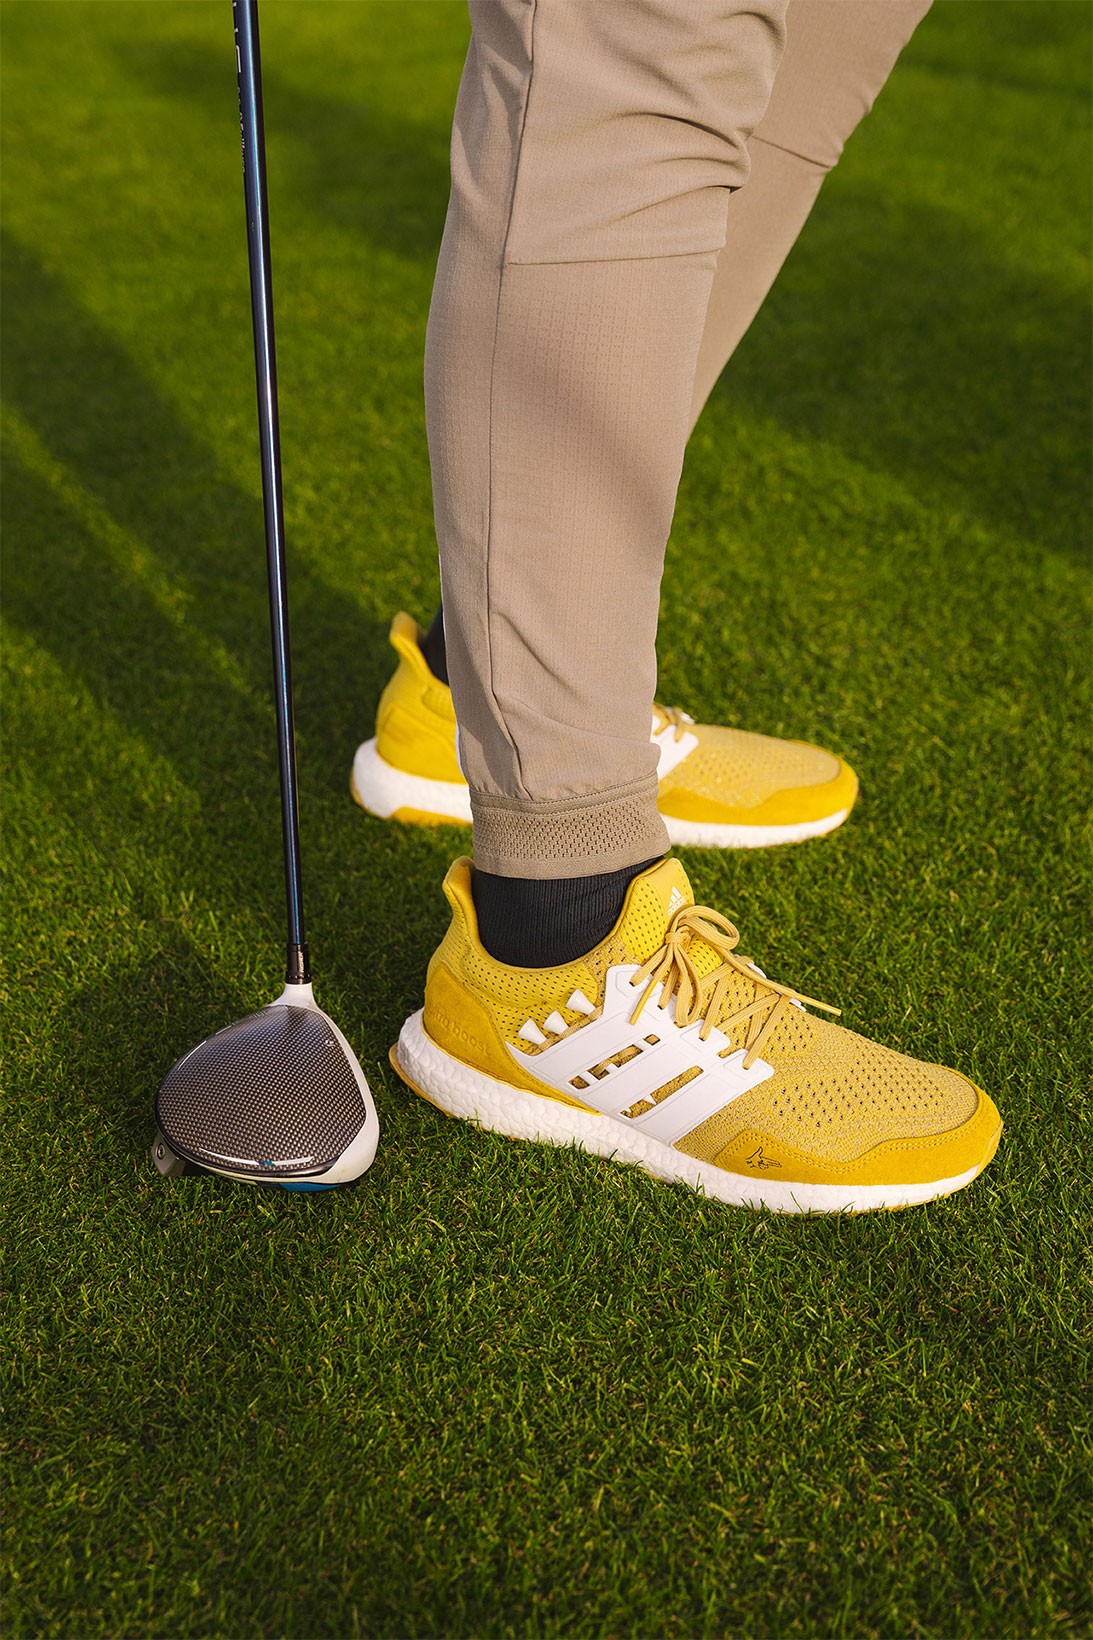 adidas выпустил гольф-коллекцию в стиле комедии «Счастливчик Гилмор» (фото 4)